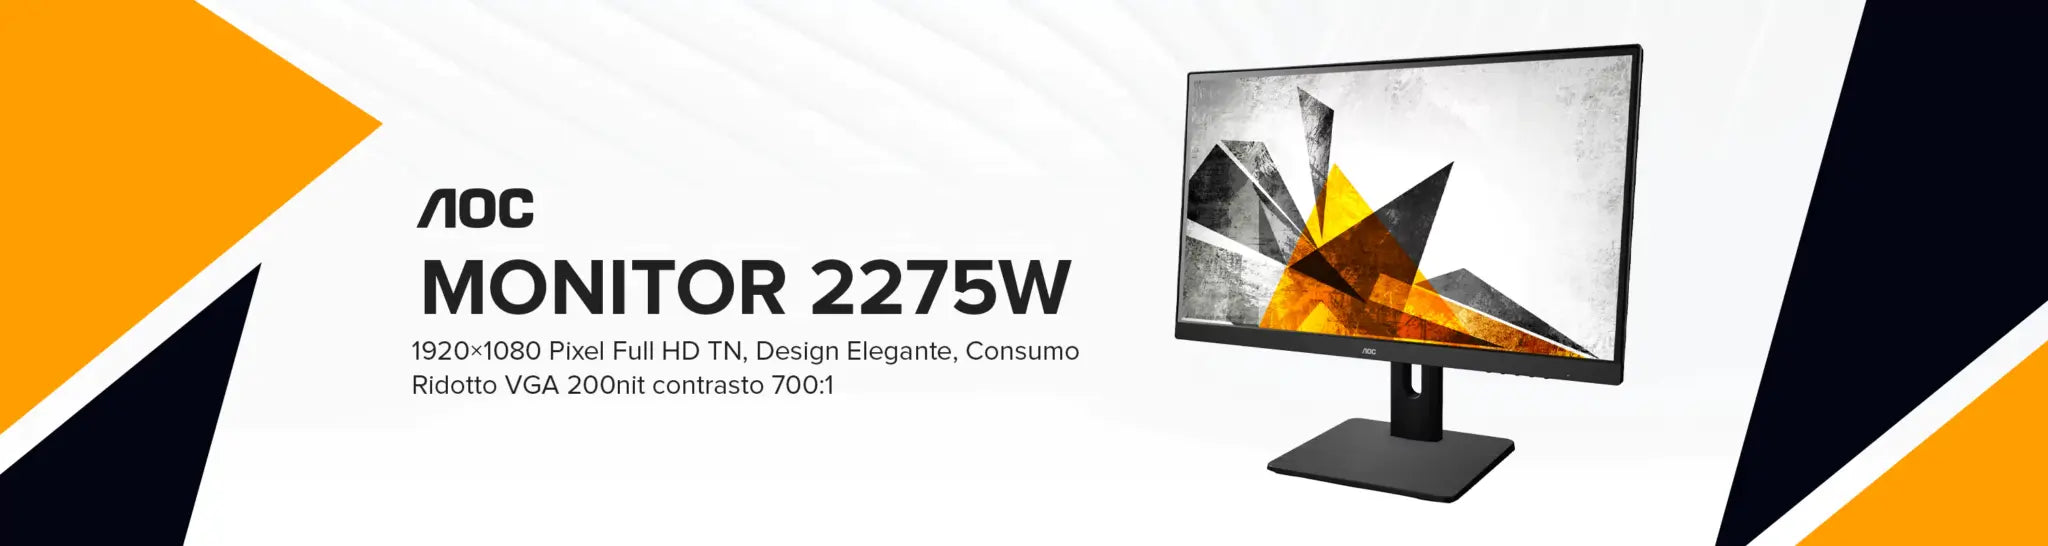 Monitor AOC 2275W Ricondizionato – 1920×1080 Pixel Full HD TN, Design Elegante, Consumo Ridotto VGA DVI HDMI Display Port 200nit contrasto 700:1